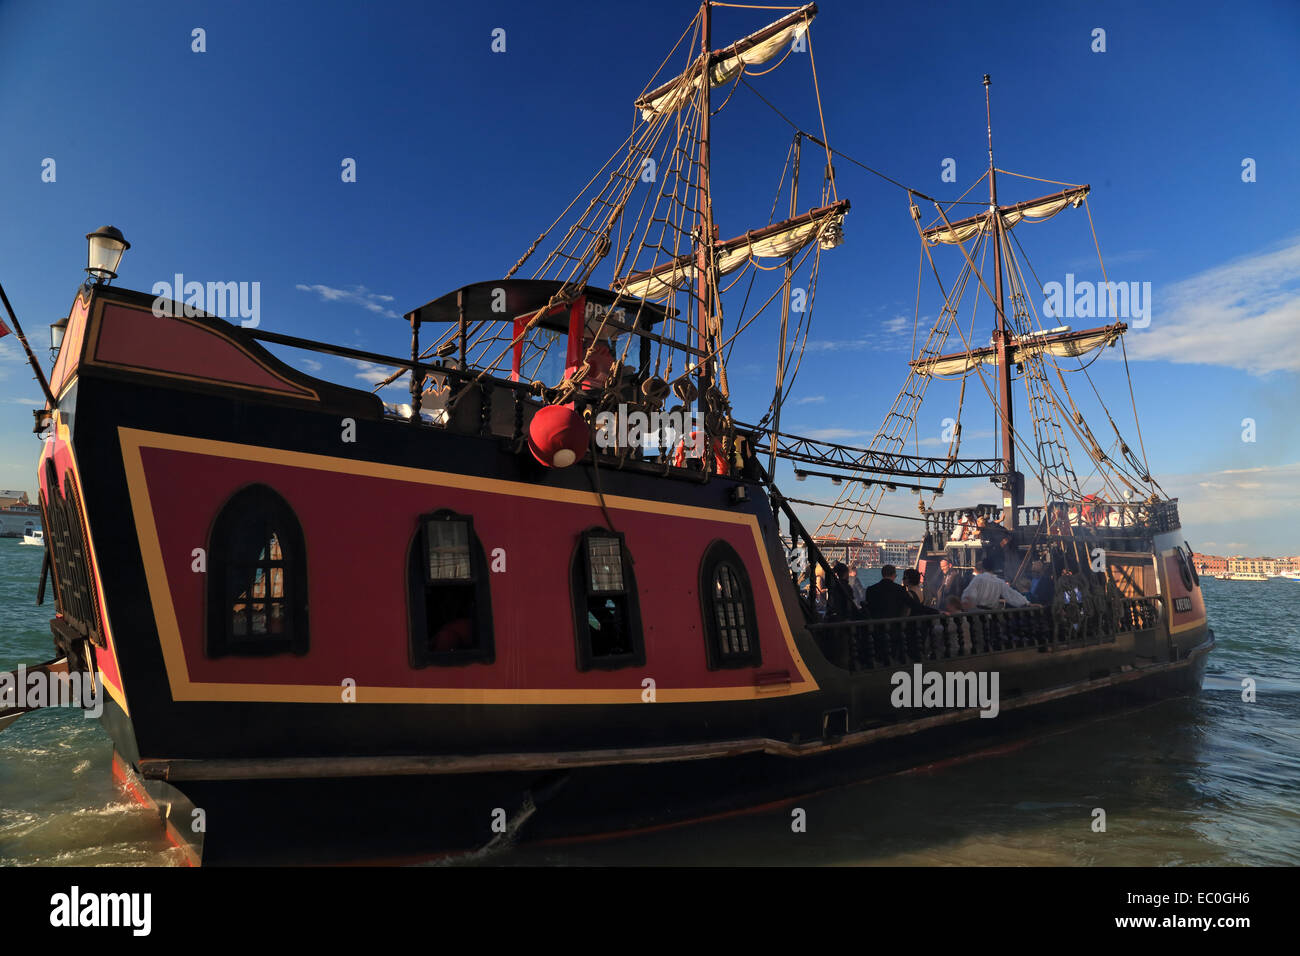 The pirate ship Jolly Roger - Il Galeone Veneziano / Venetian Galleon, Venice Stock Photo